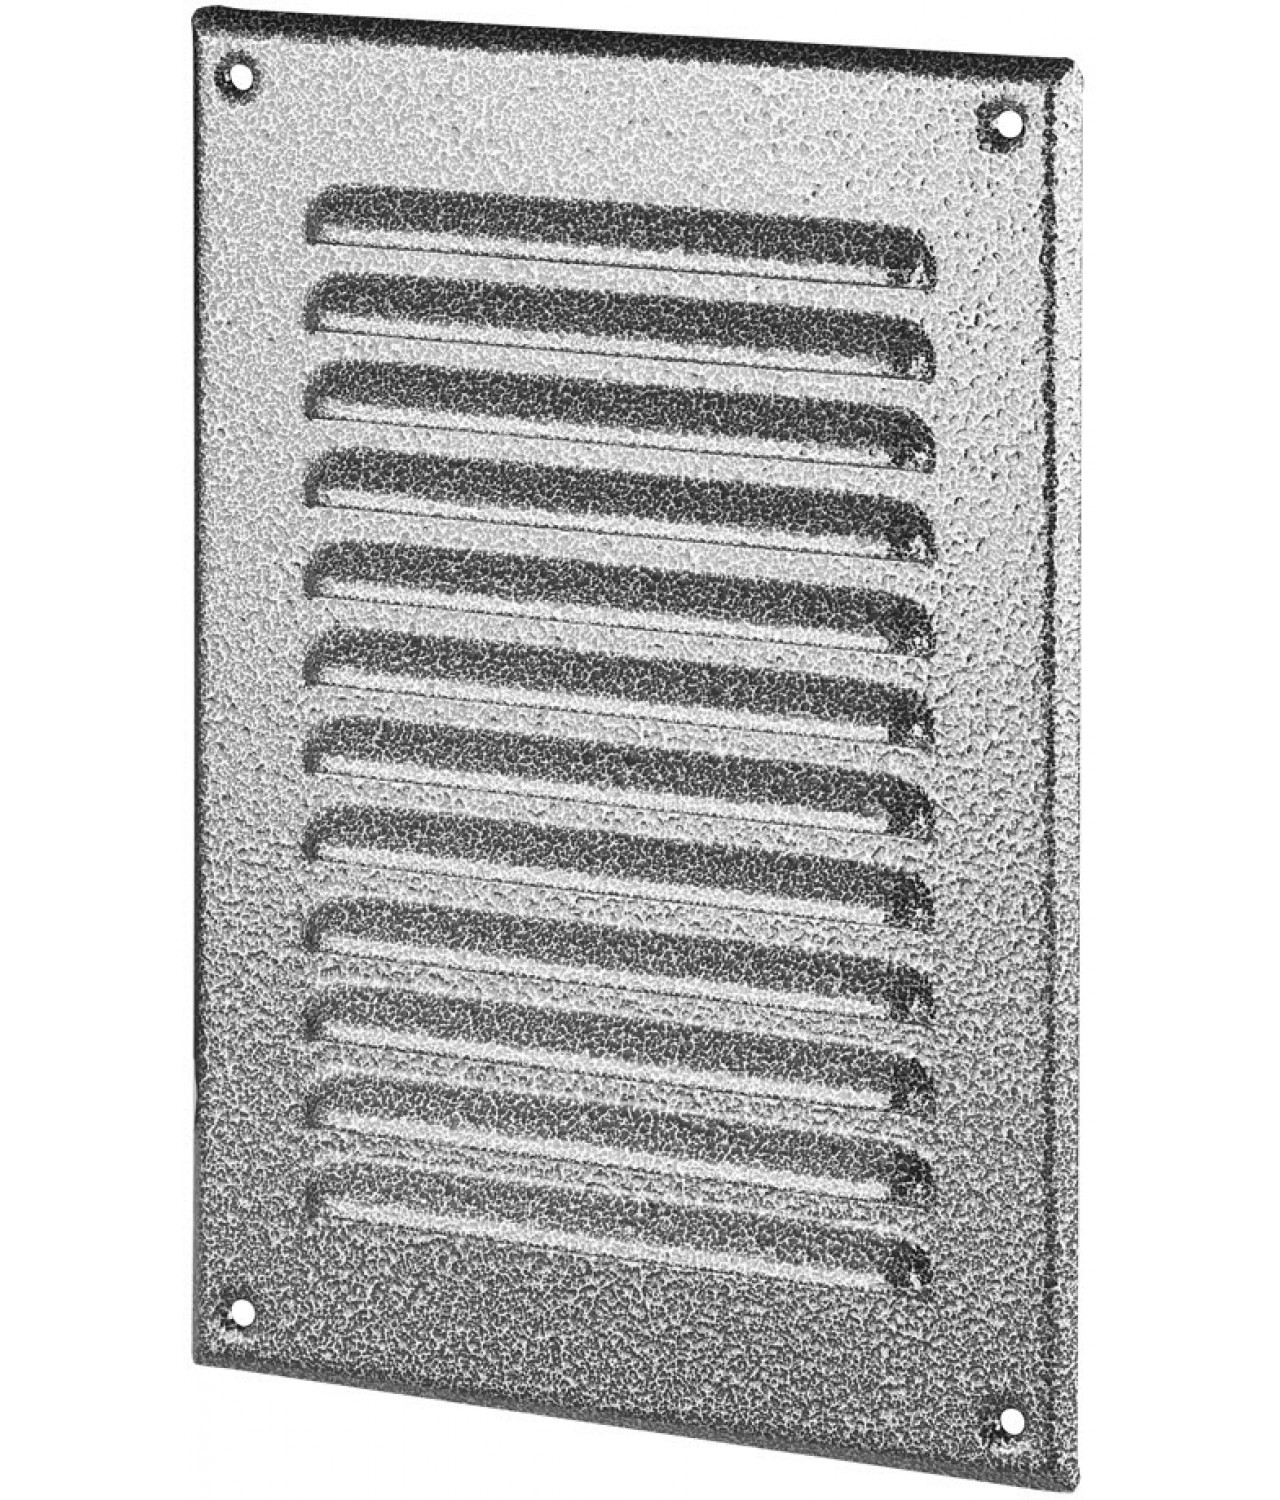 Metalinės ventiliacinės grotelės META4ANSR 165x240 mm